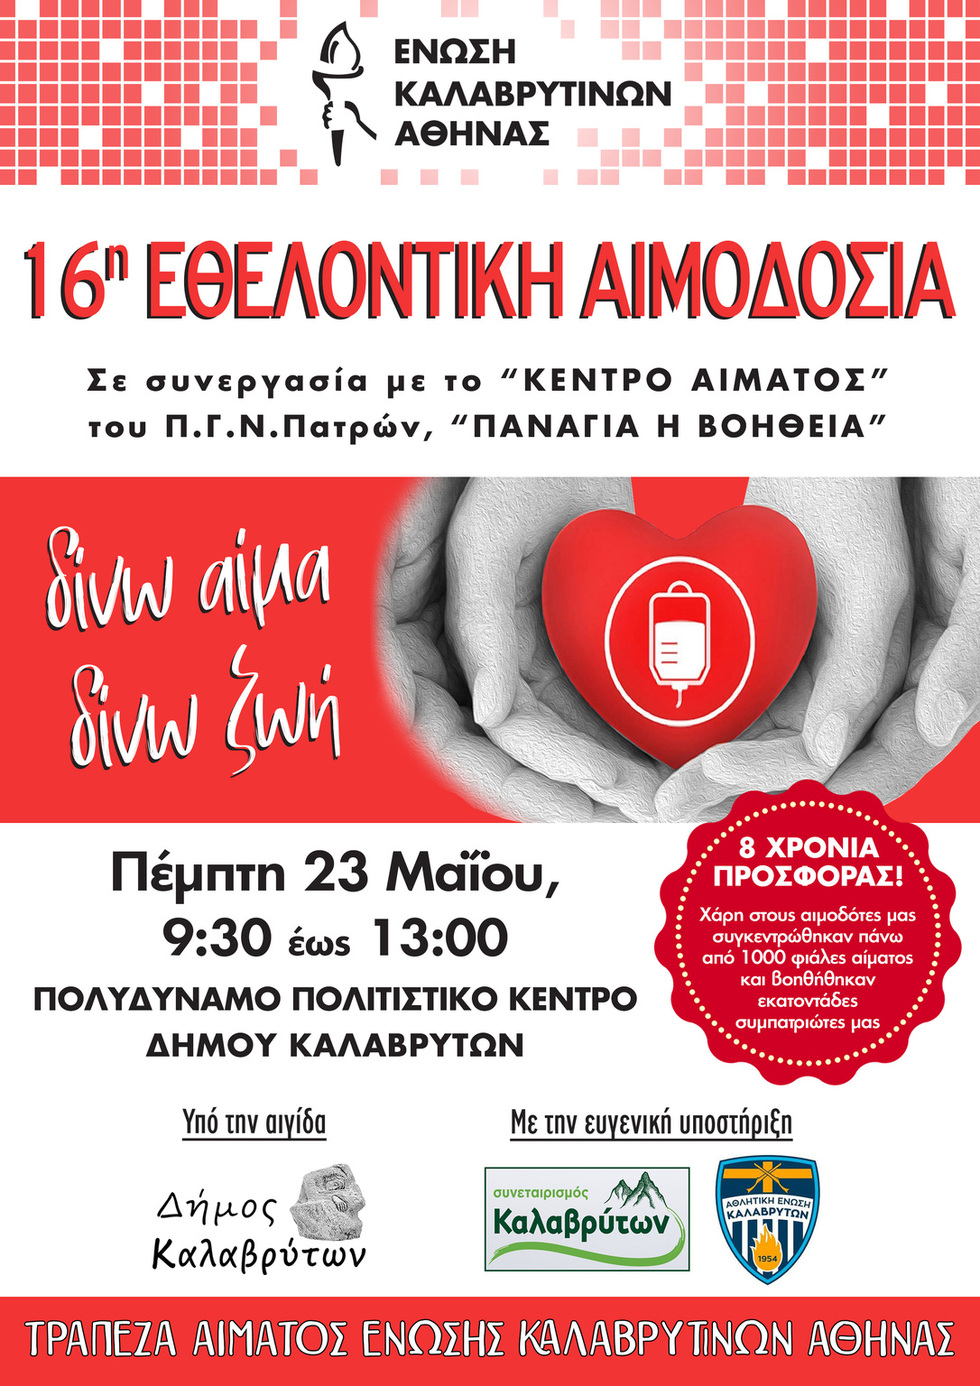 16η Εθελοντική Αιμοδόσία από την Ένωση Καλαβρυτινών Αθήνας με την υποστήριξη του Συνεταιρισμού Καλαβρύτων